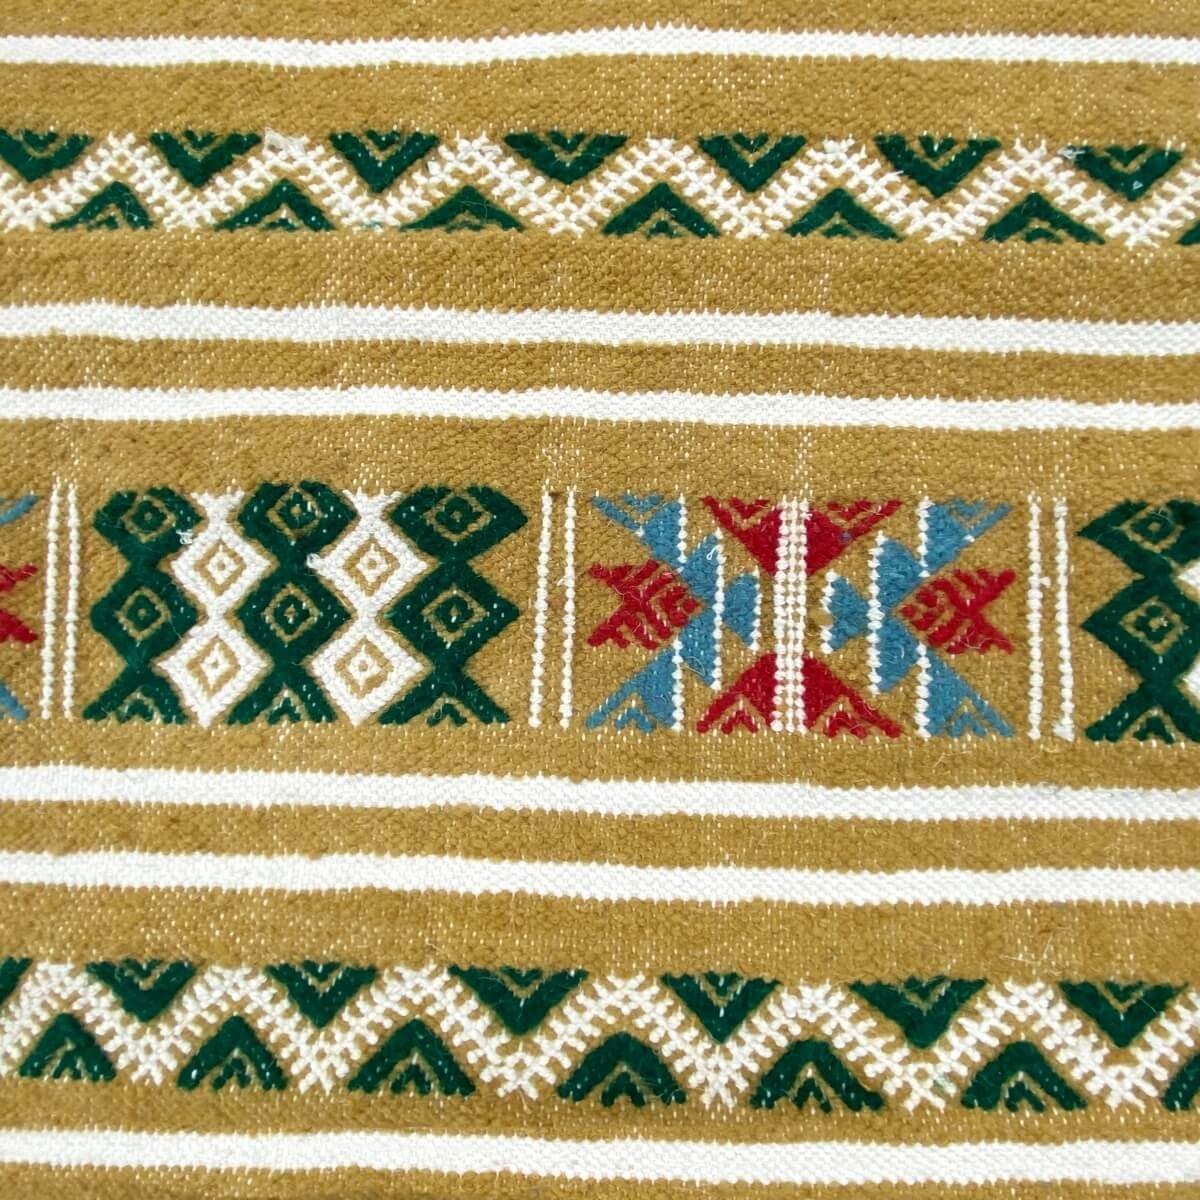 Berber tapijt Tapijt Kilim Takut 103x173 Geel/Wit (Handgeweven, Wol, Tunesië) Tunesisch kilimdeken, Marokkaanse stijl. Rechthoek